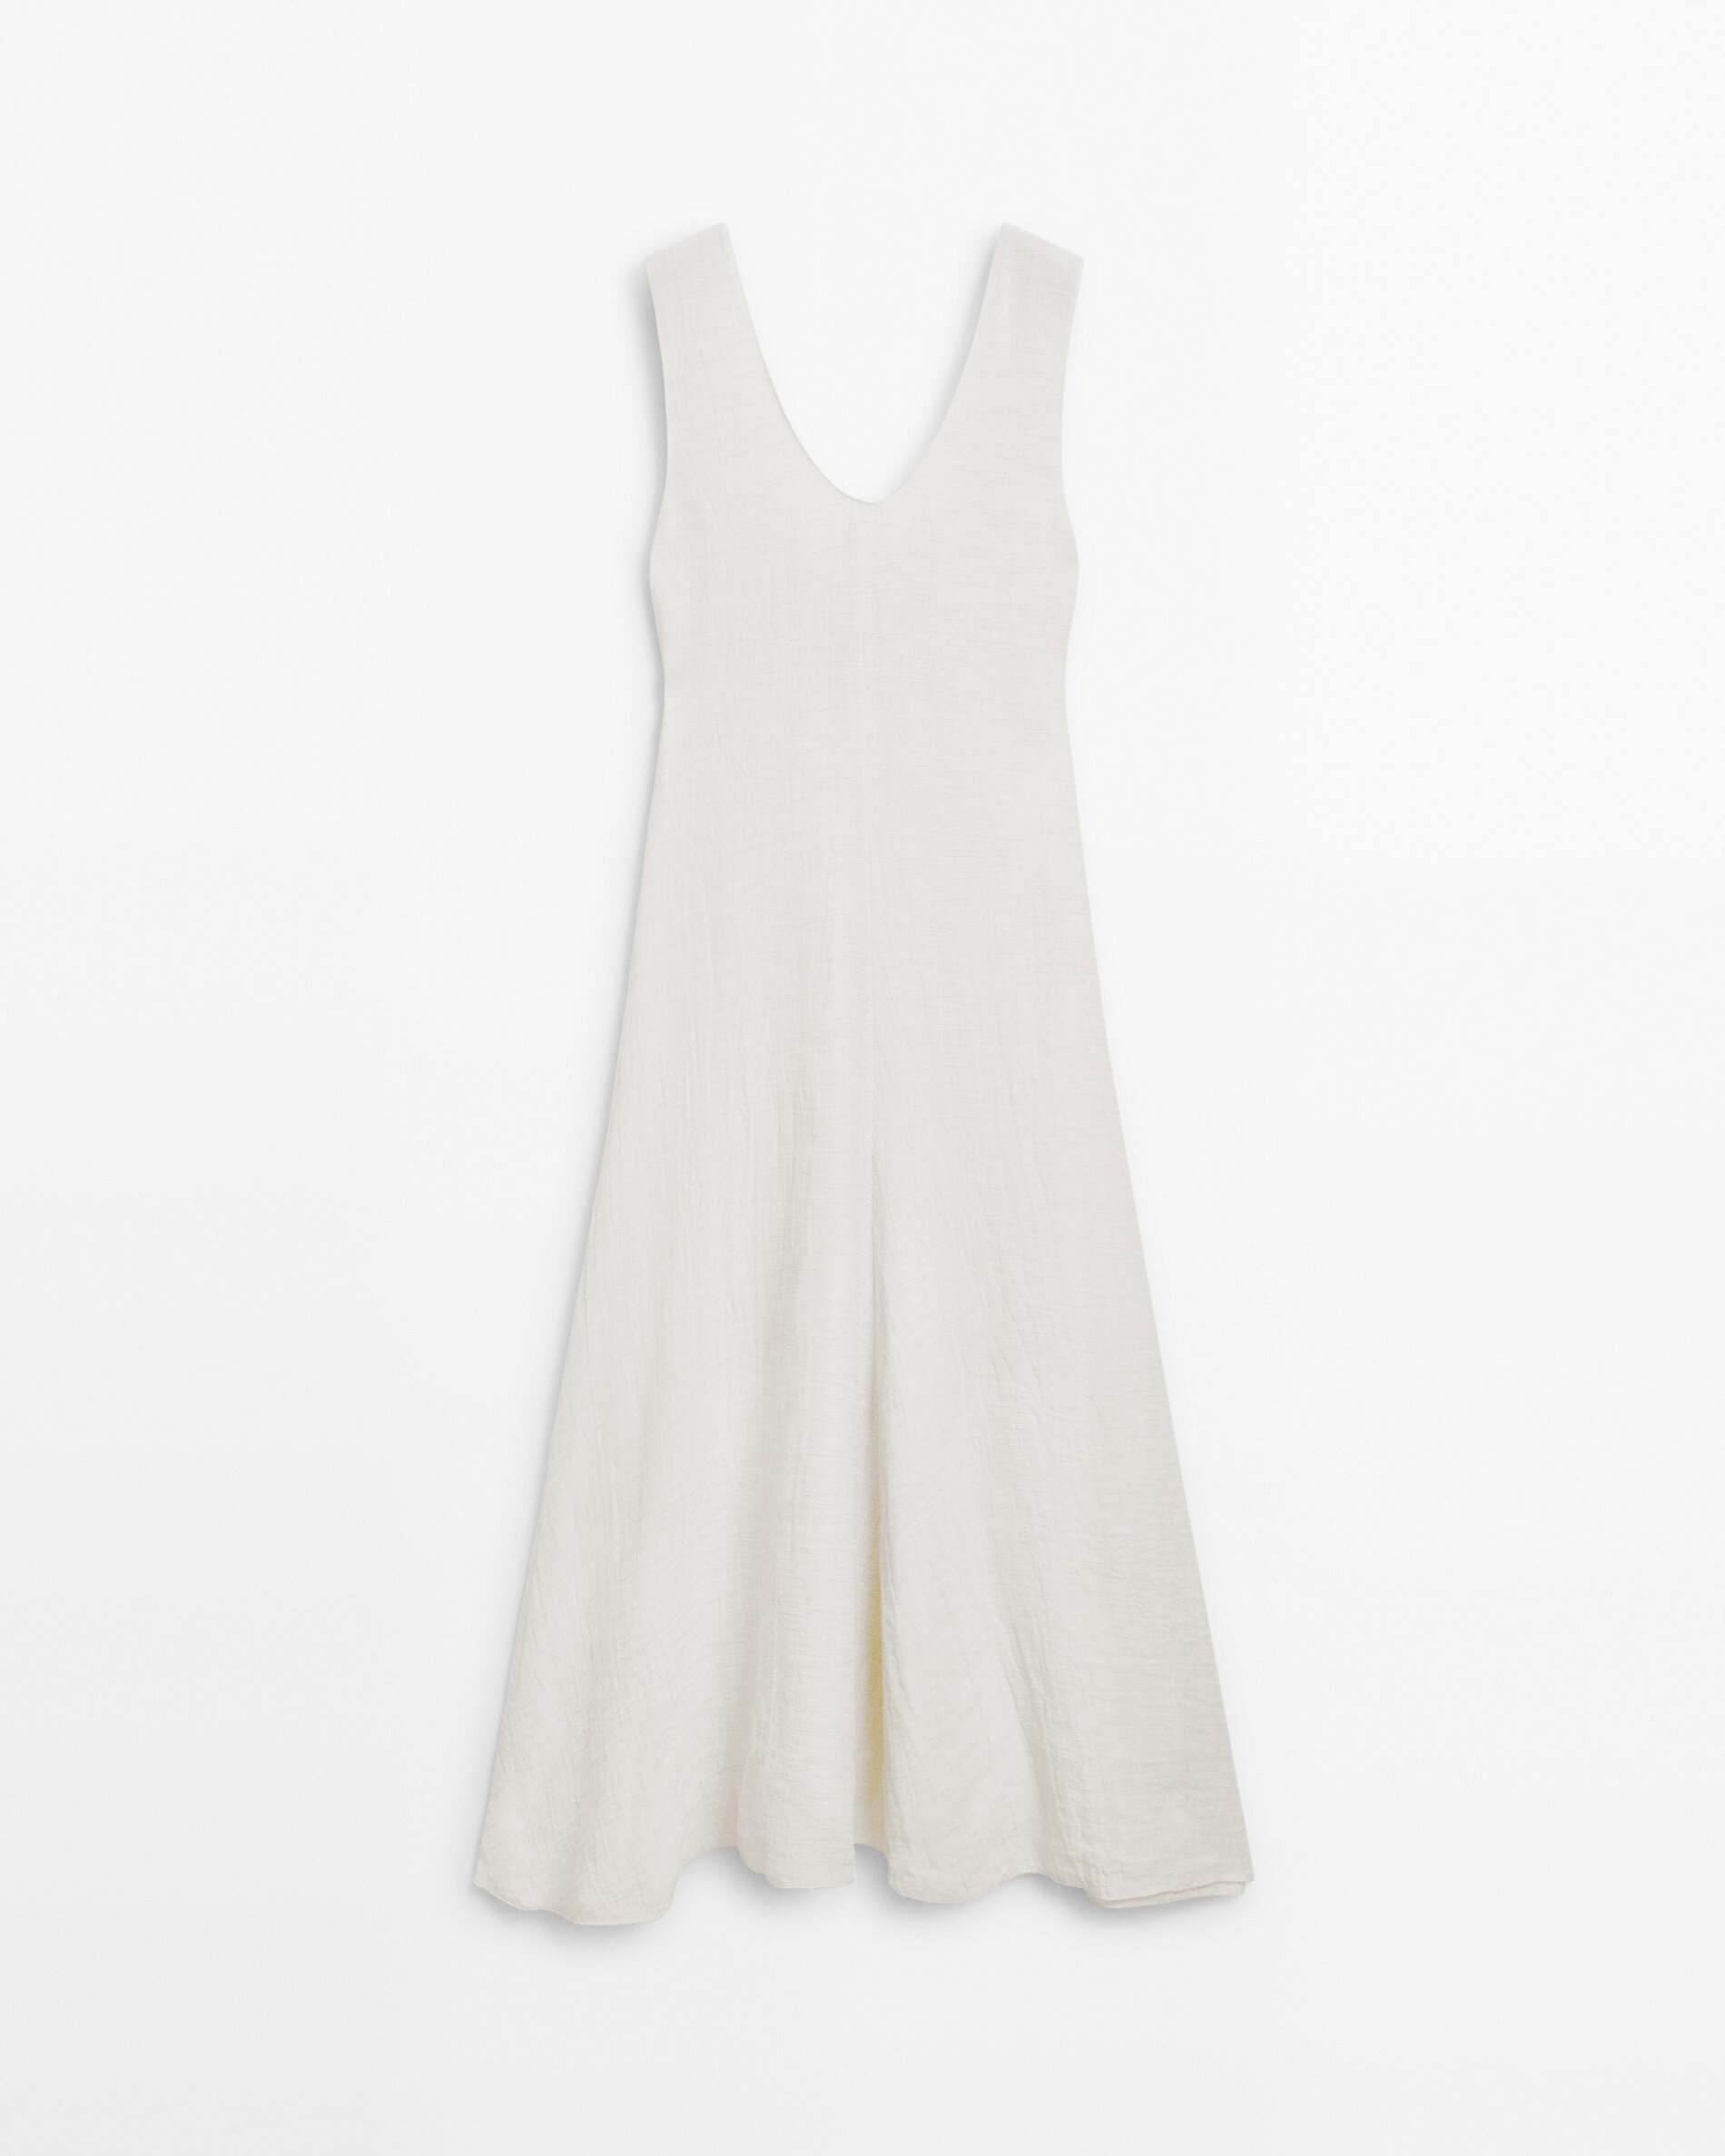 Renueva tu armario con el vestido largo con texturas de Massimo Dutti que te har sentir fabulosa a los 60 aos